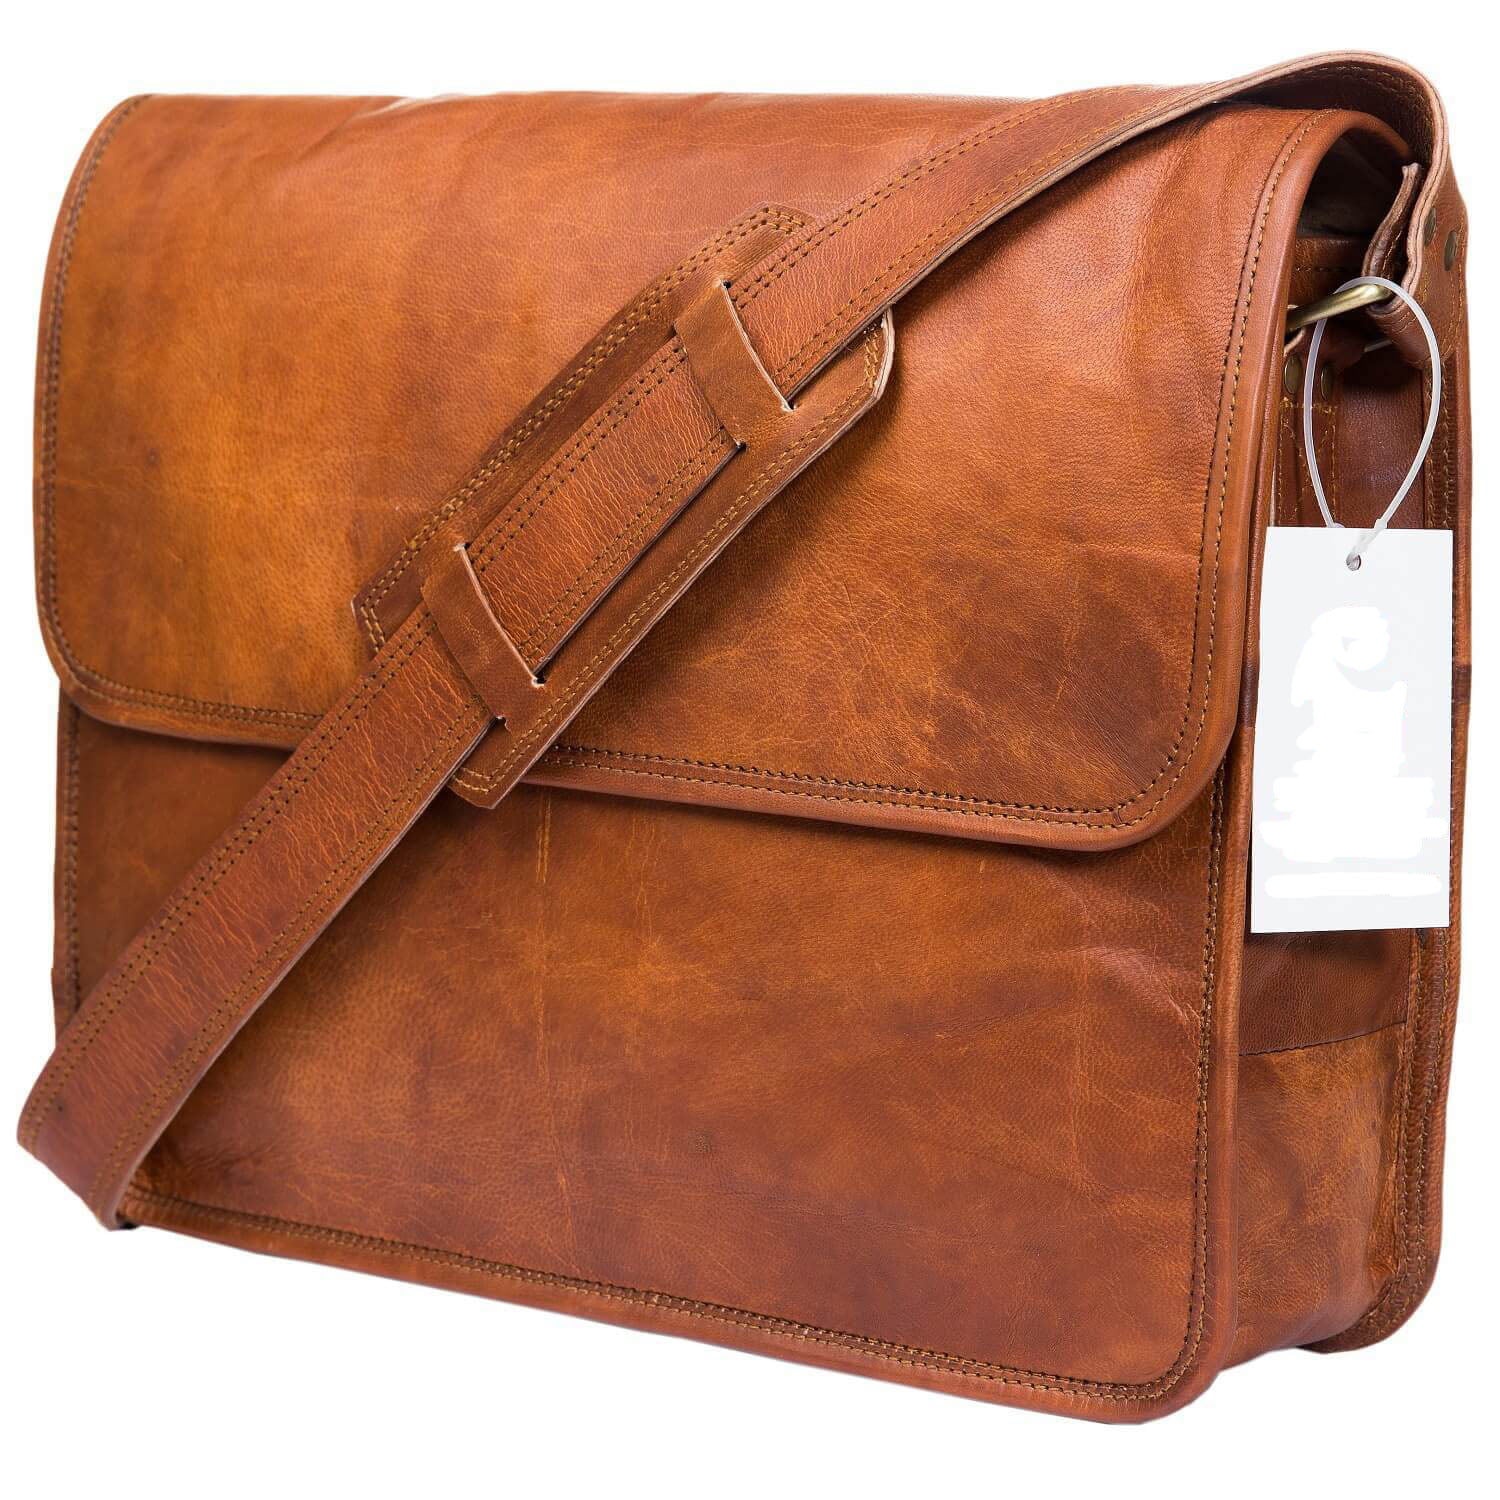 Leather Messenger Bag for Men Laptop Shoulder Satchel University